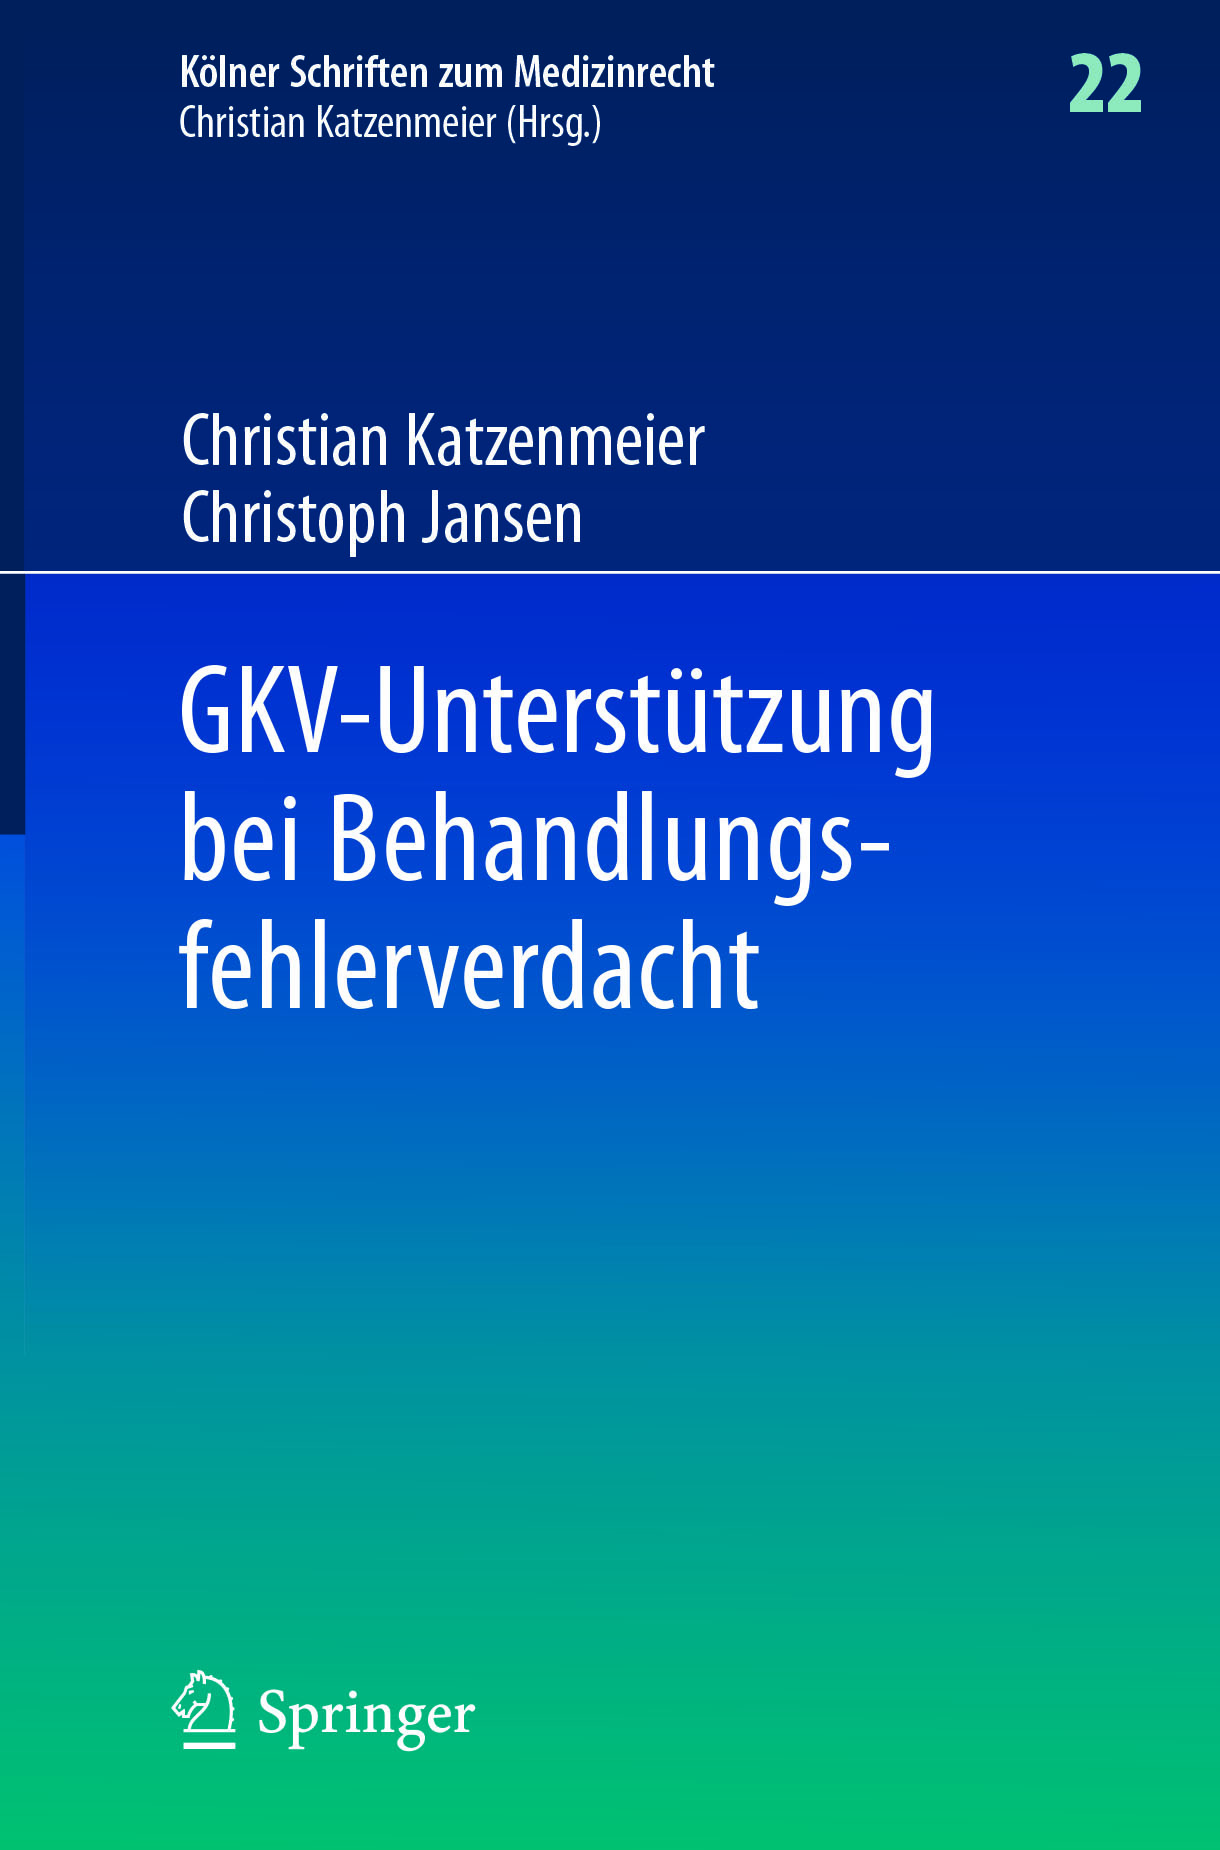 Jansen, Christoph - GKV-Unterstützung bei Behandlungsfehlerverdacht, ebook